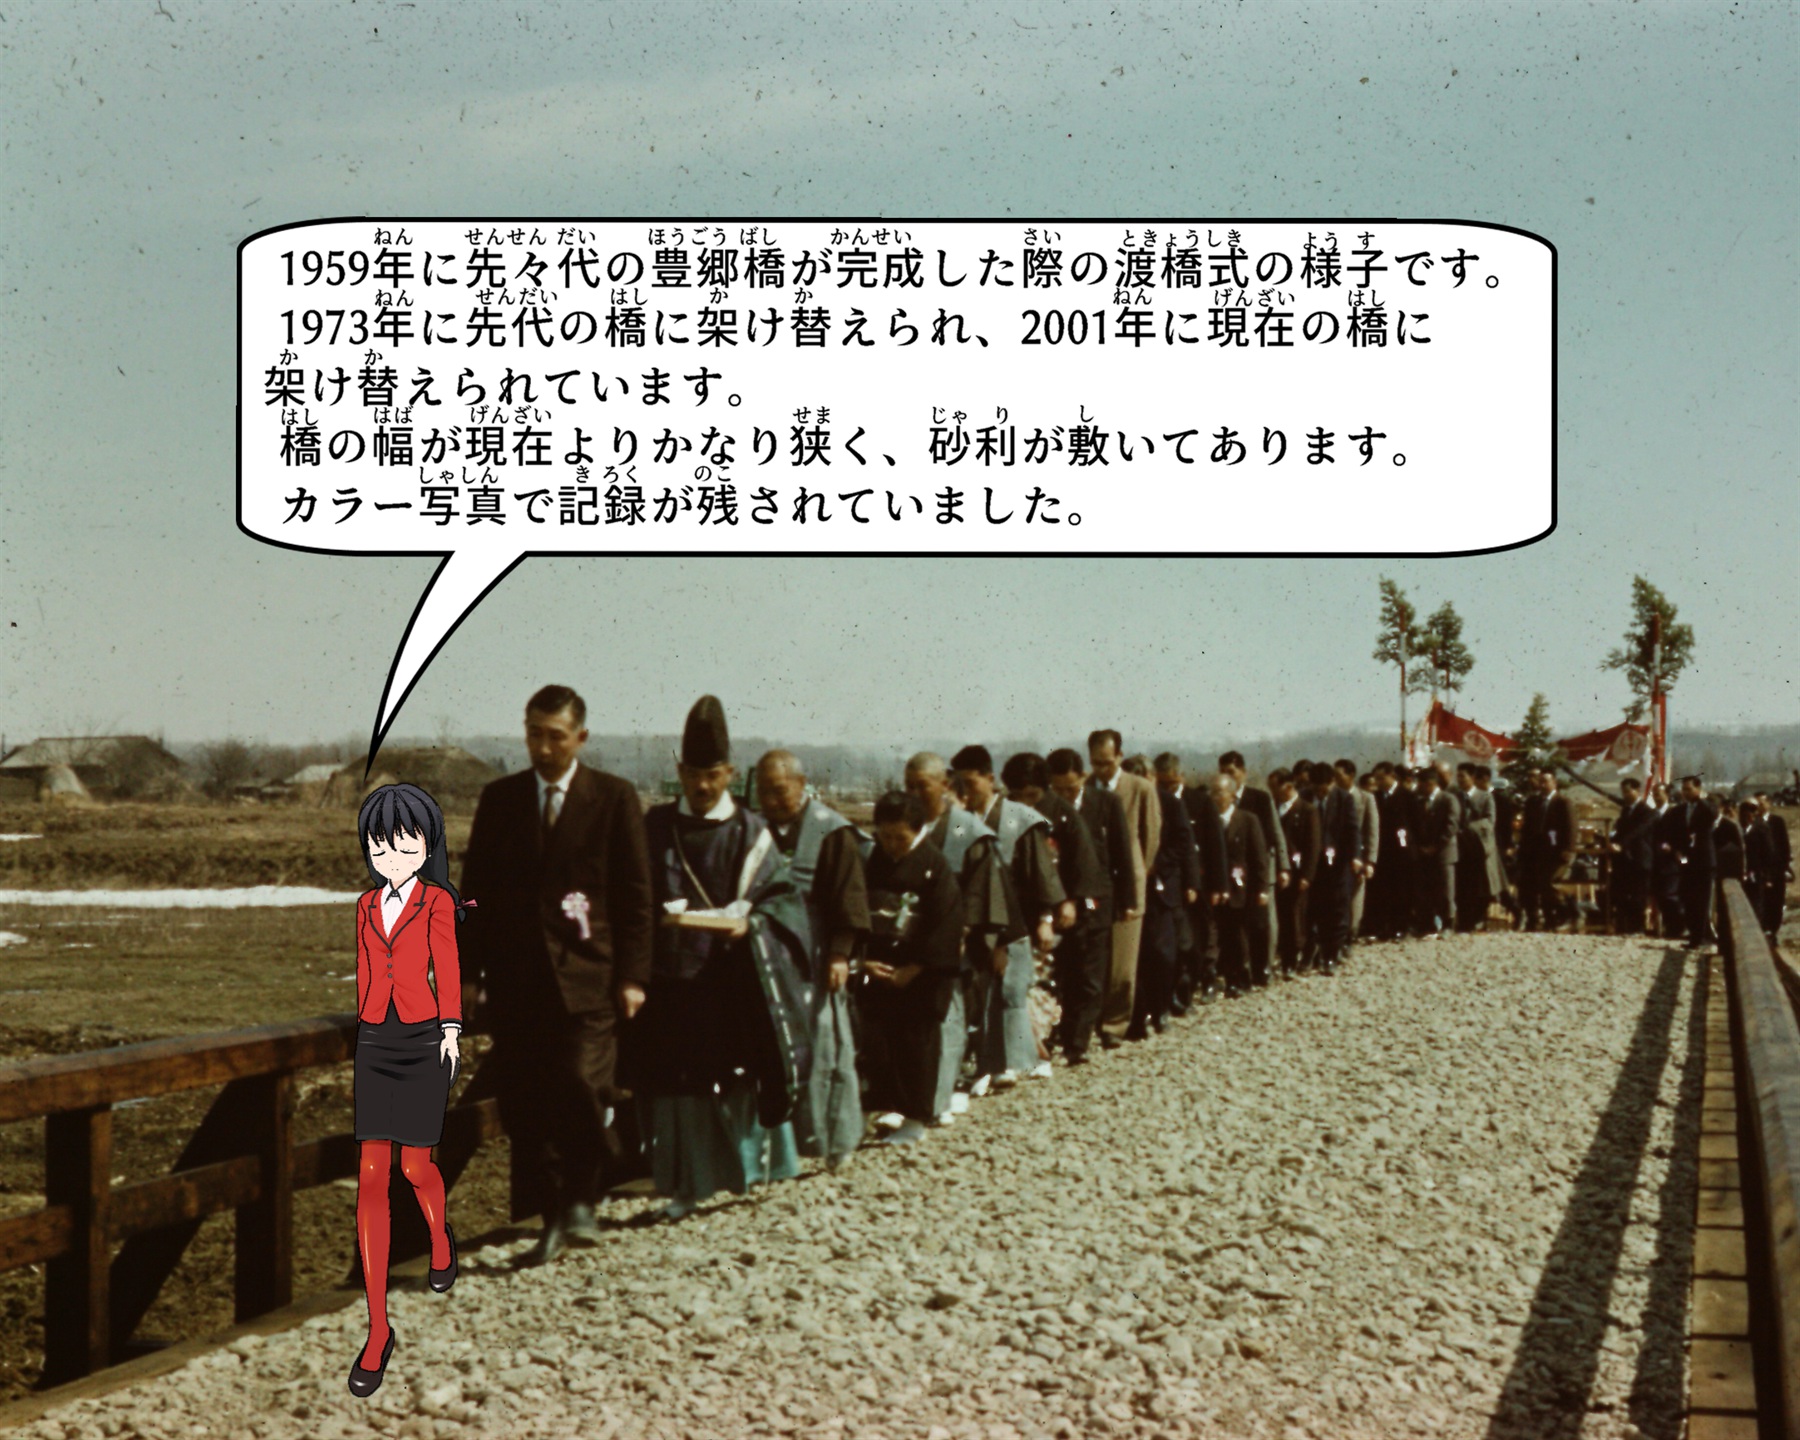 1959年の豊郷橋渡橋式の様子について説明しているイラスト